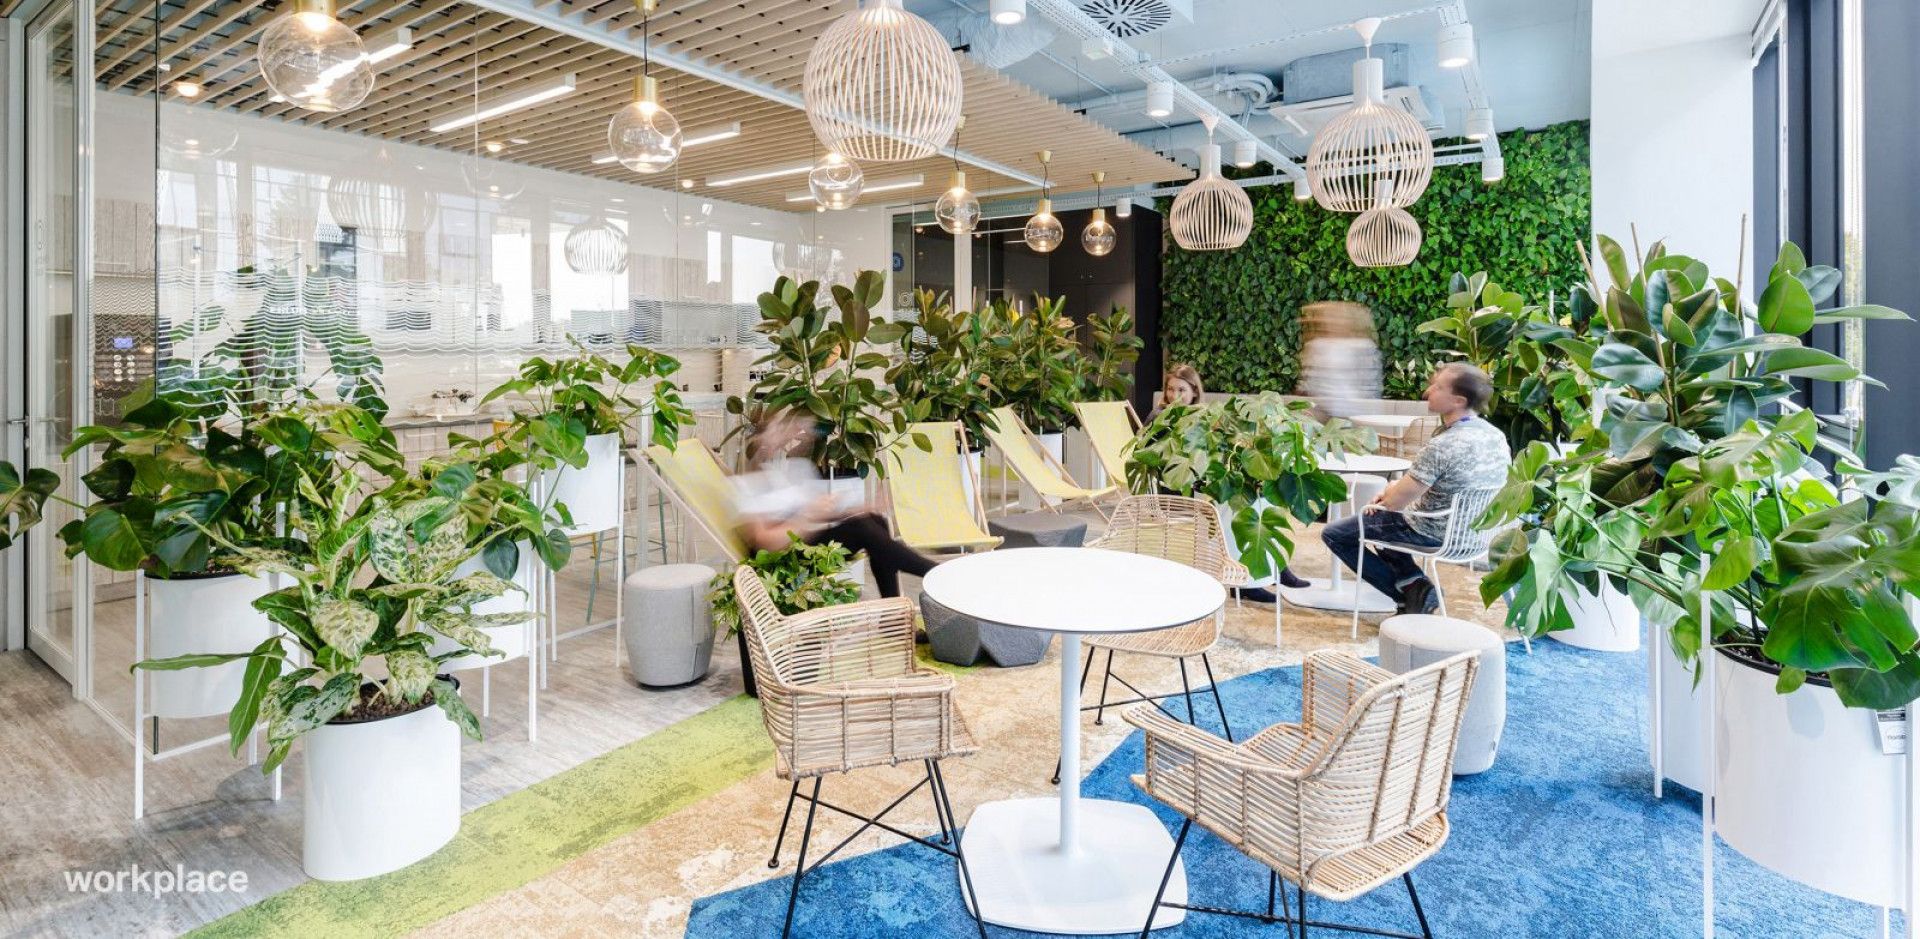 Biuro firmy Nordea zostało zaprojektowane zgodnie z zasadami Biophilic Design. Fot. Workplace Solutions